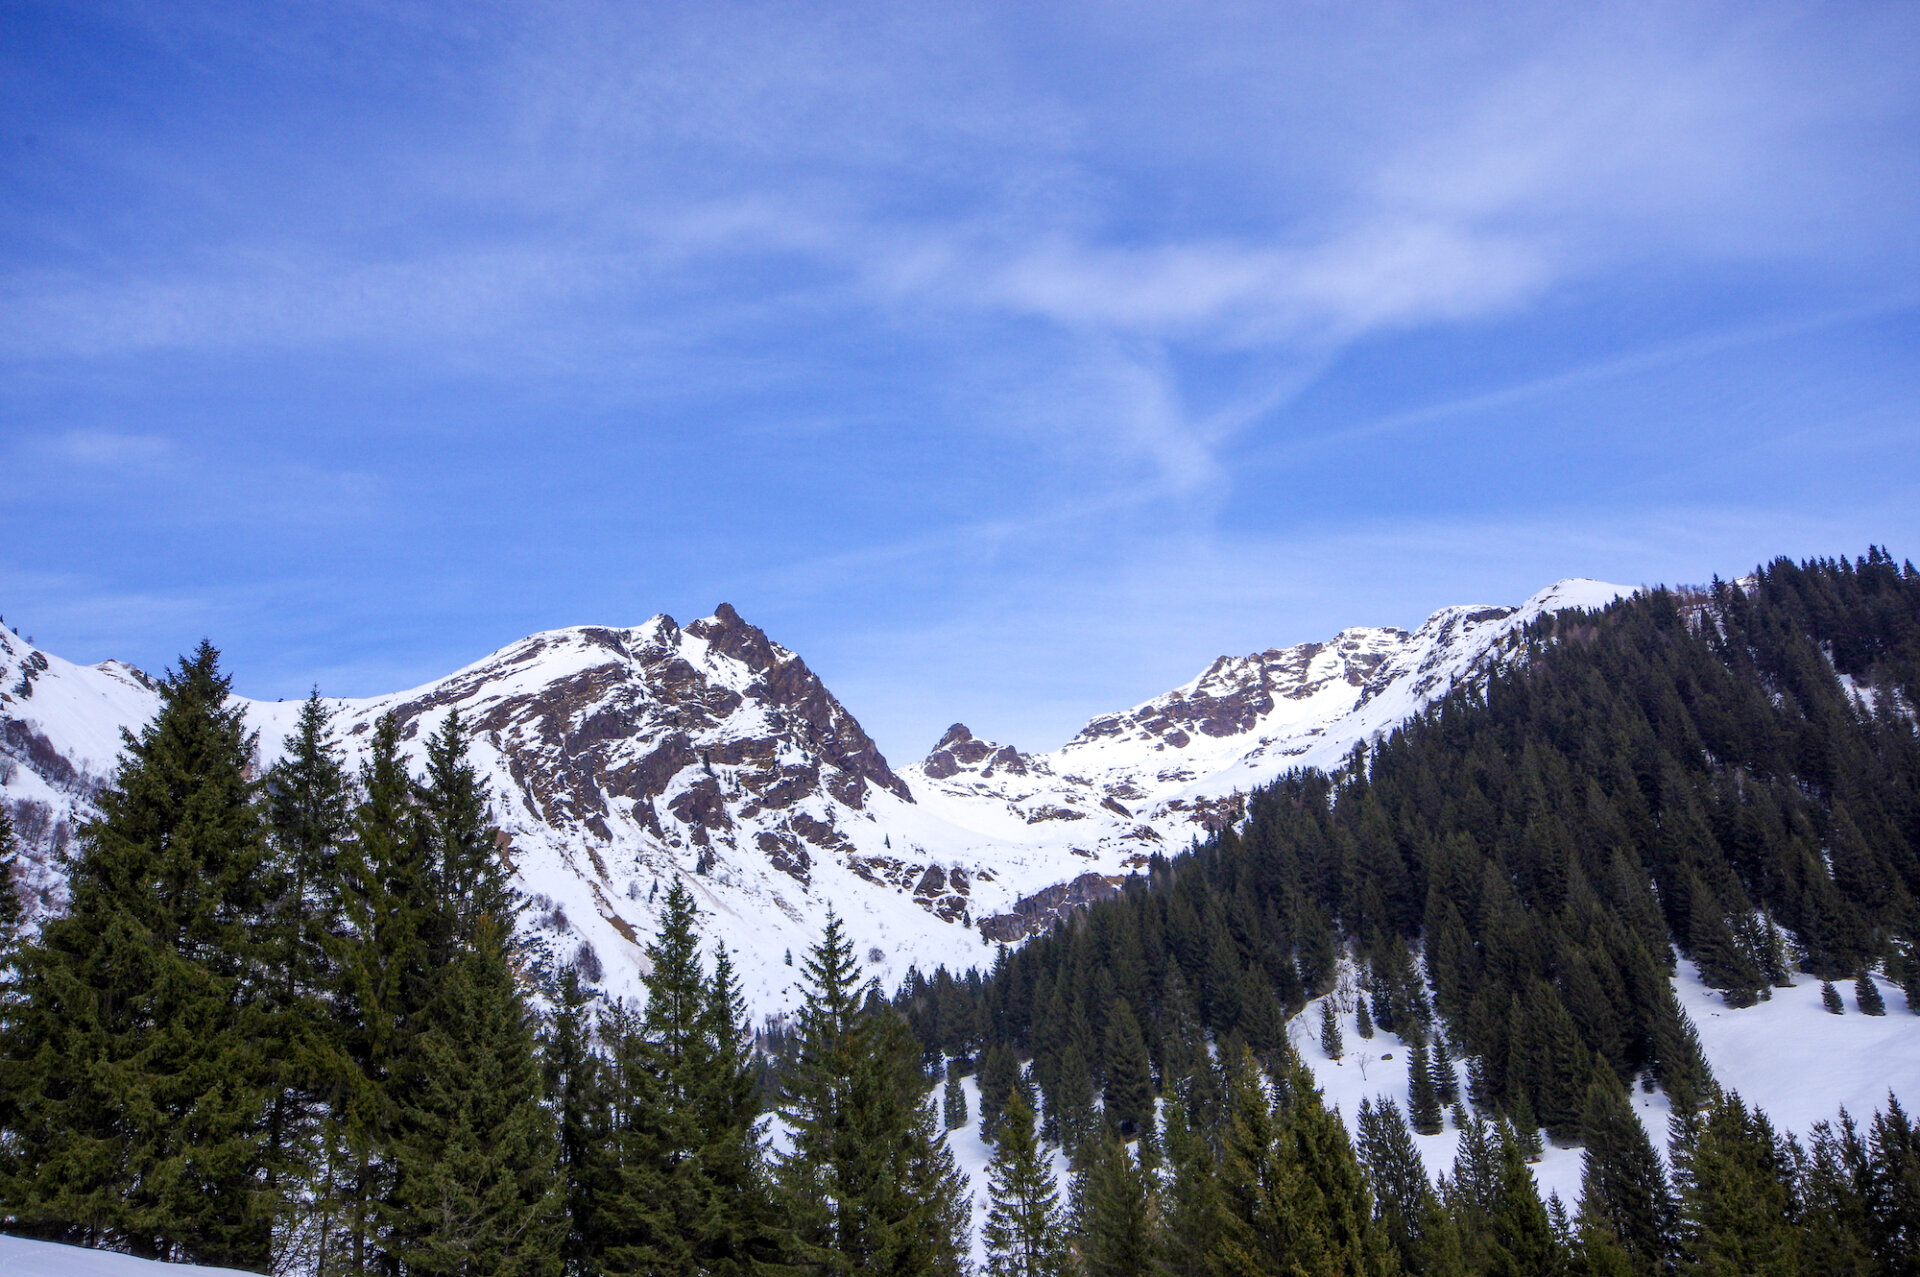 6 - Gita al rifugio Alpe Corte, lago Branchino e passo dei laghi gemelli online